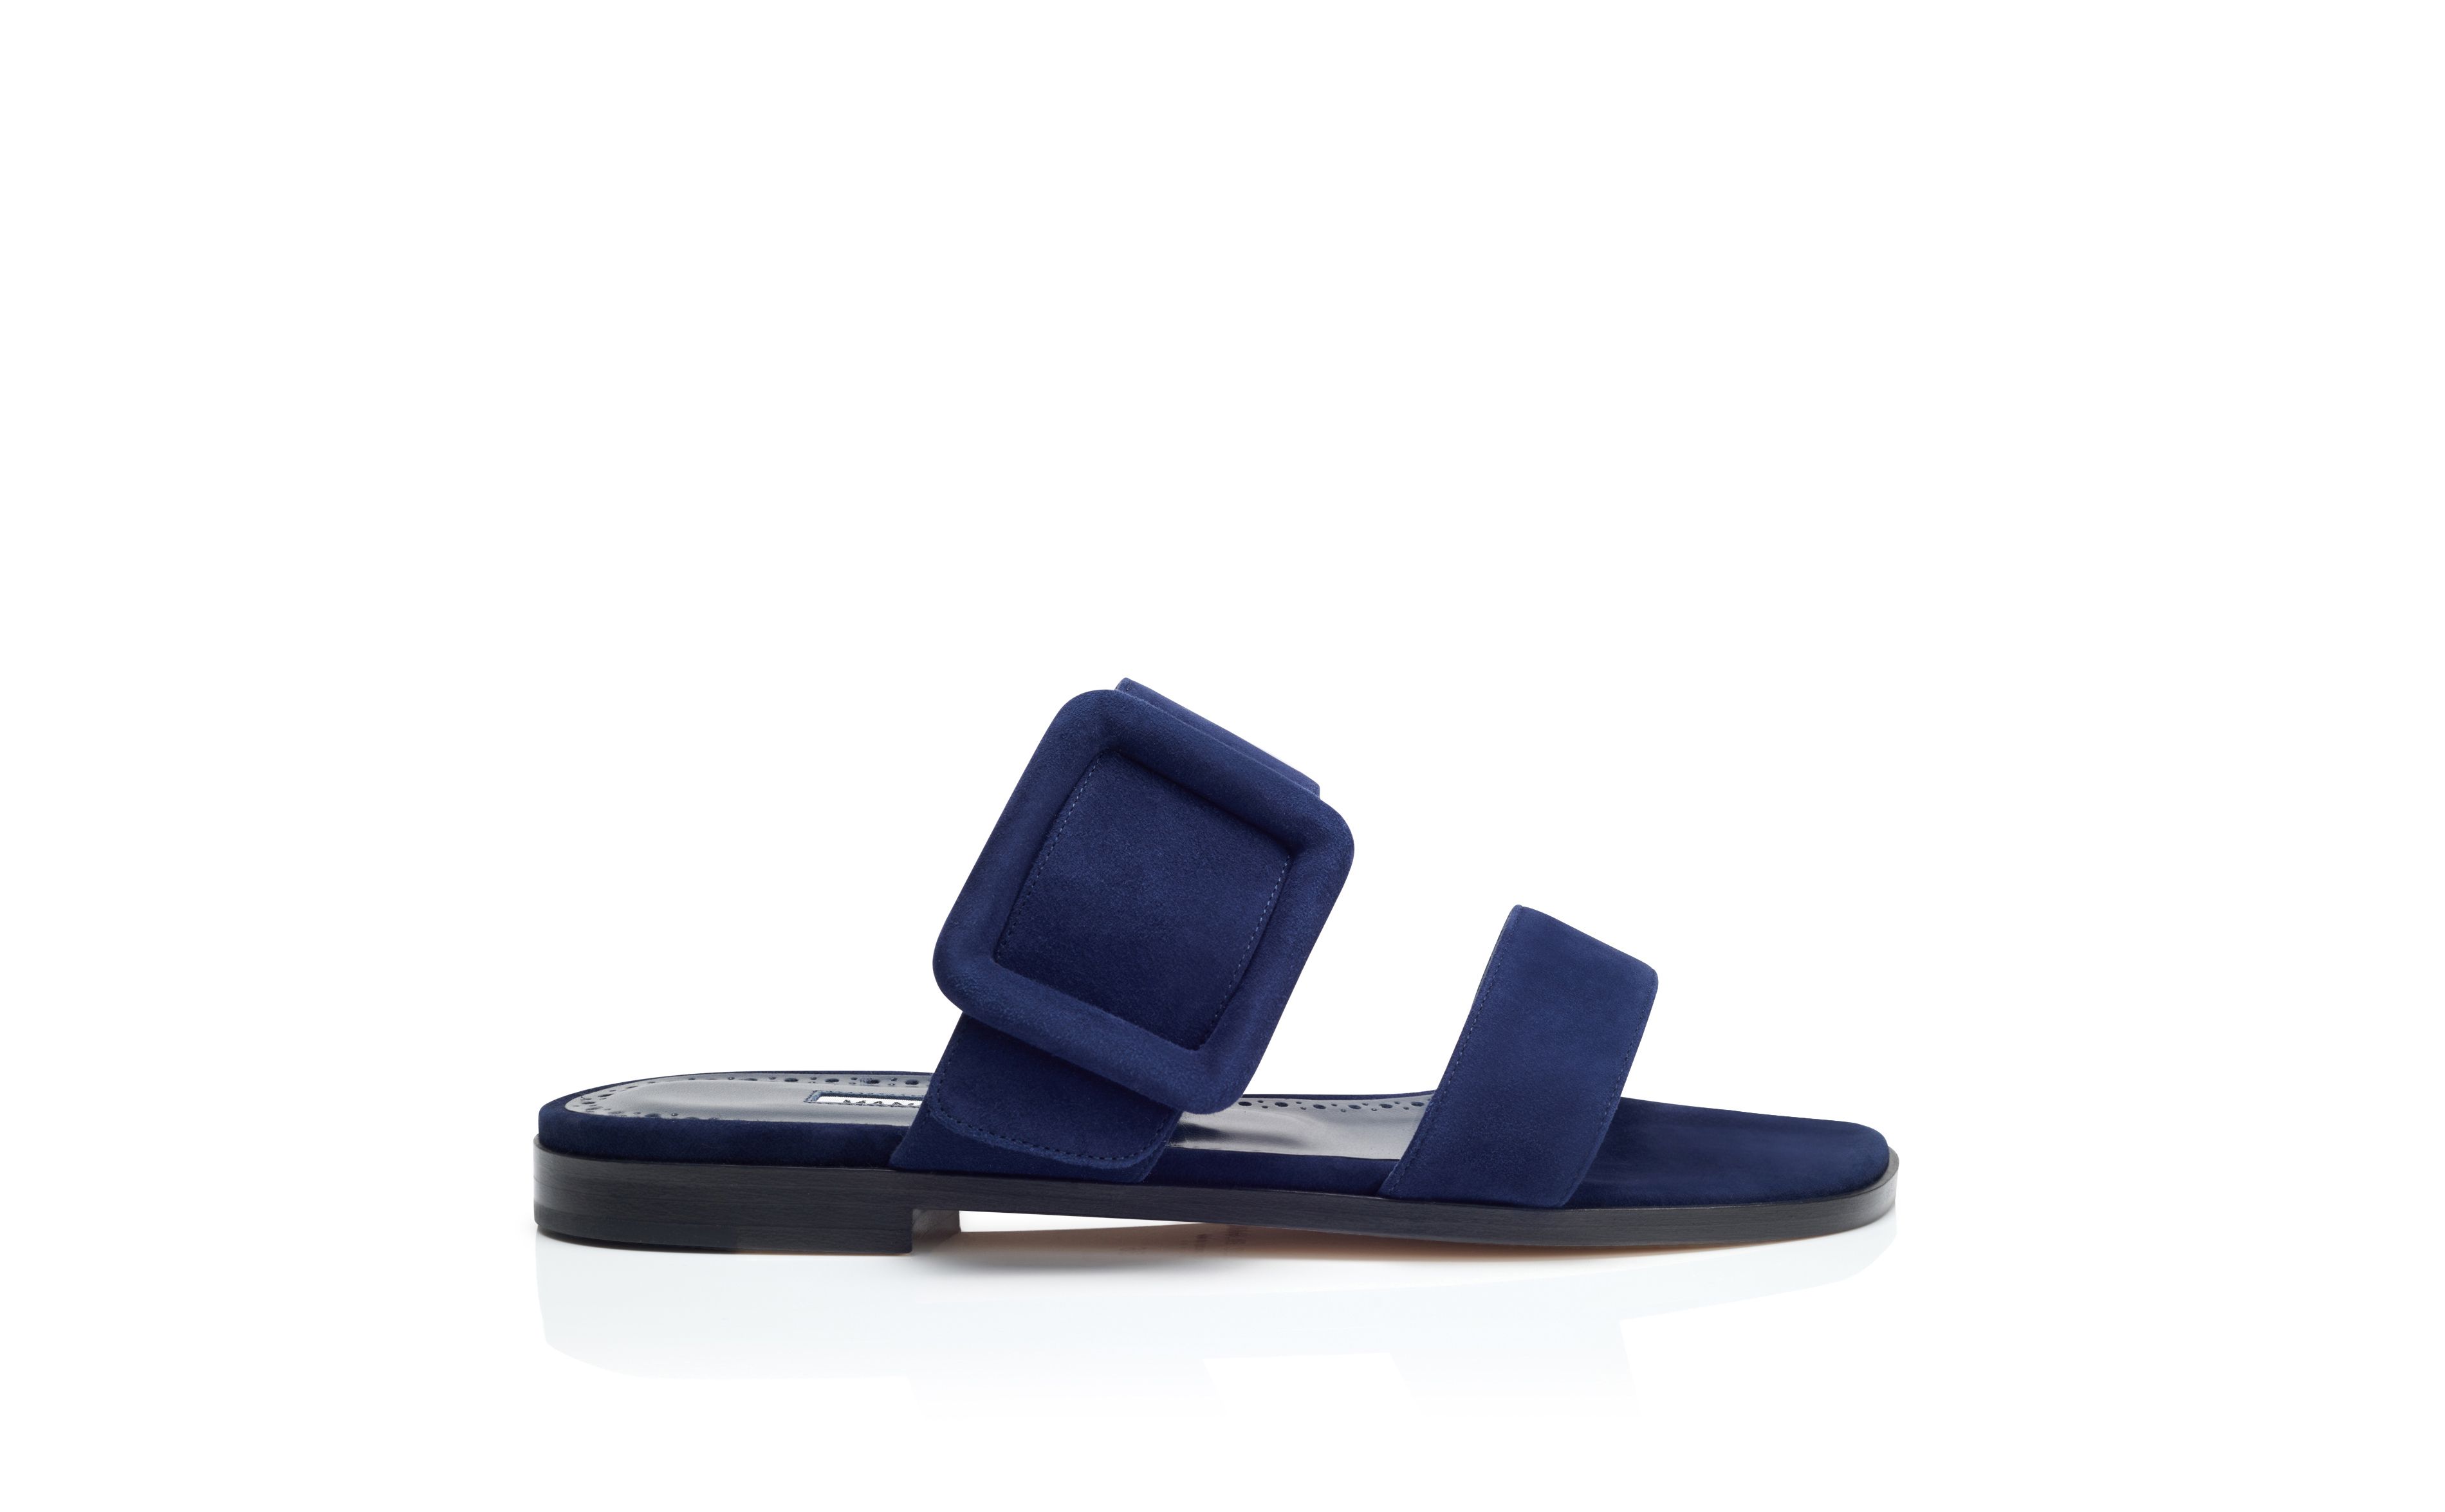 Designer Navy Blue Suede Flat Sandals - Image Side View